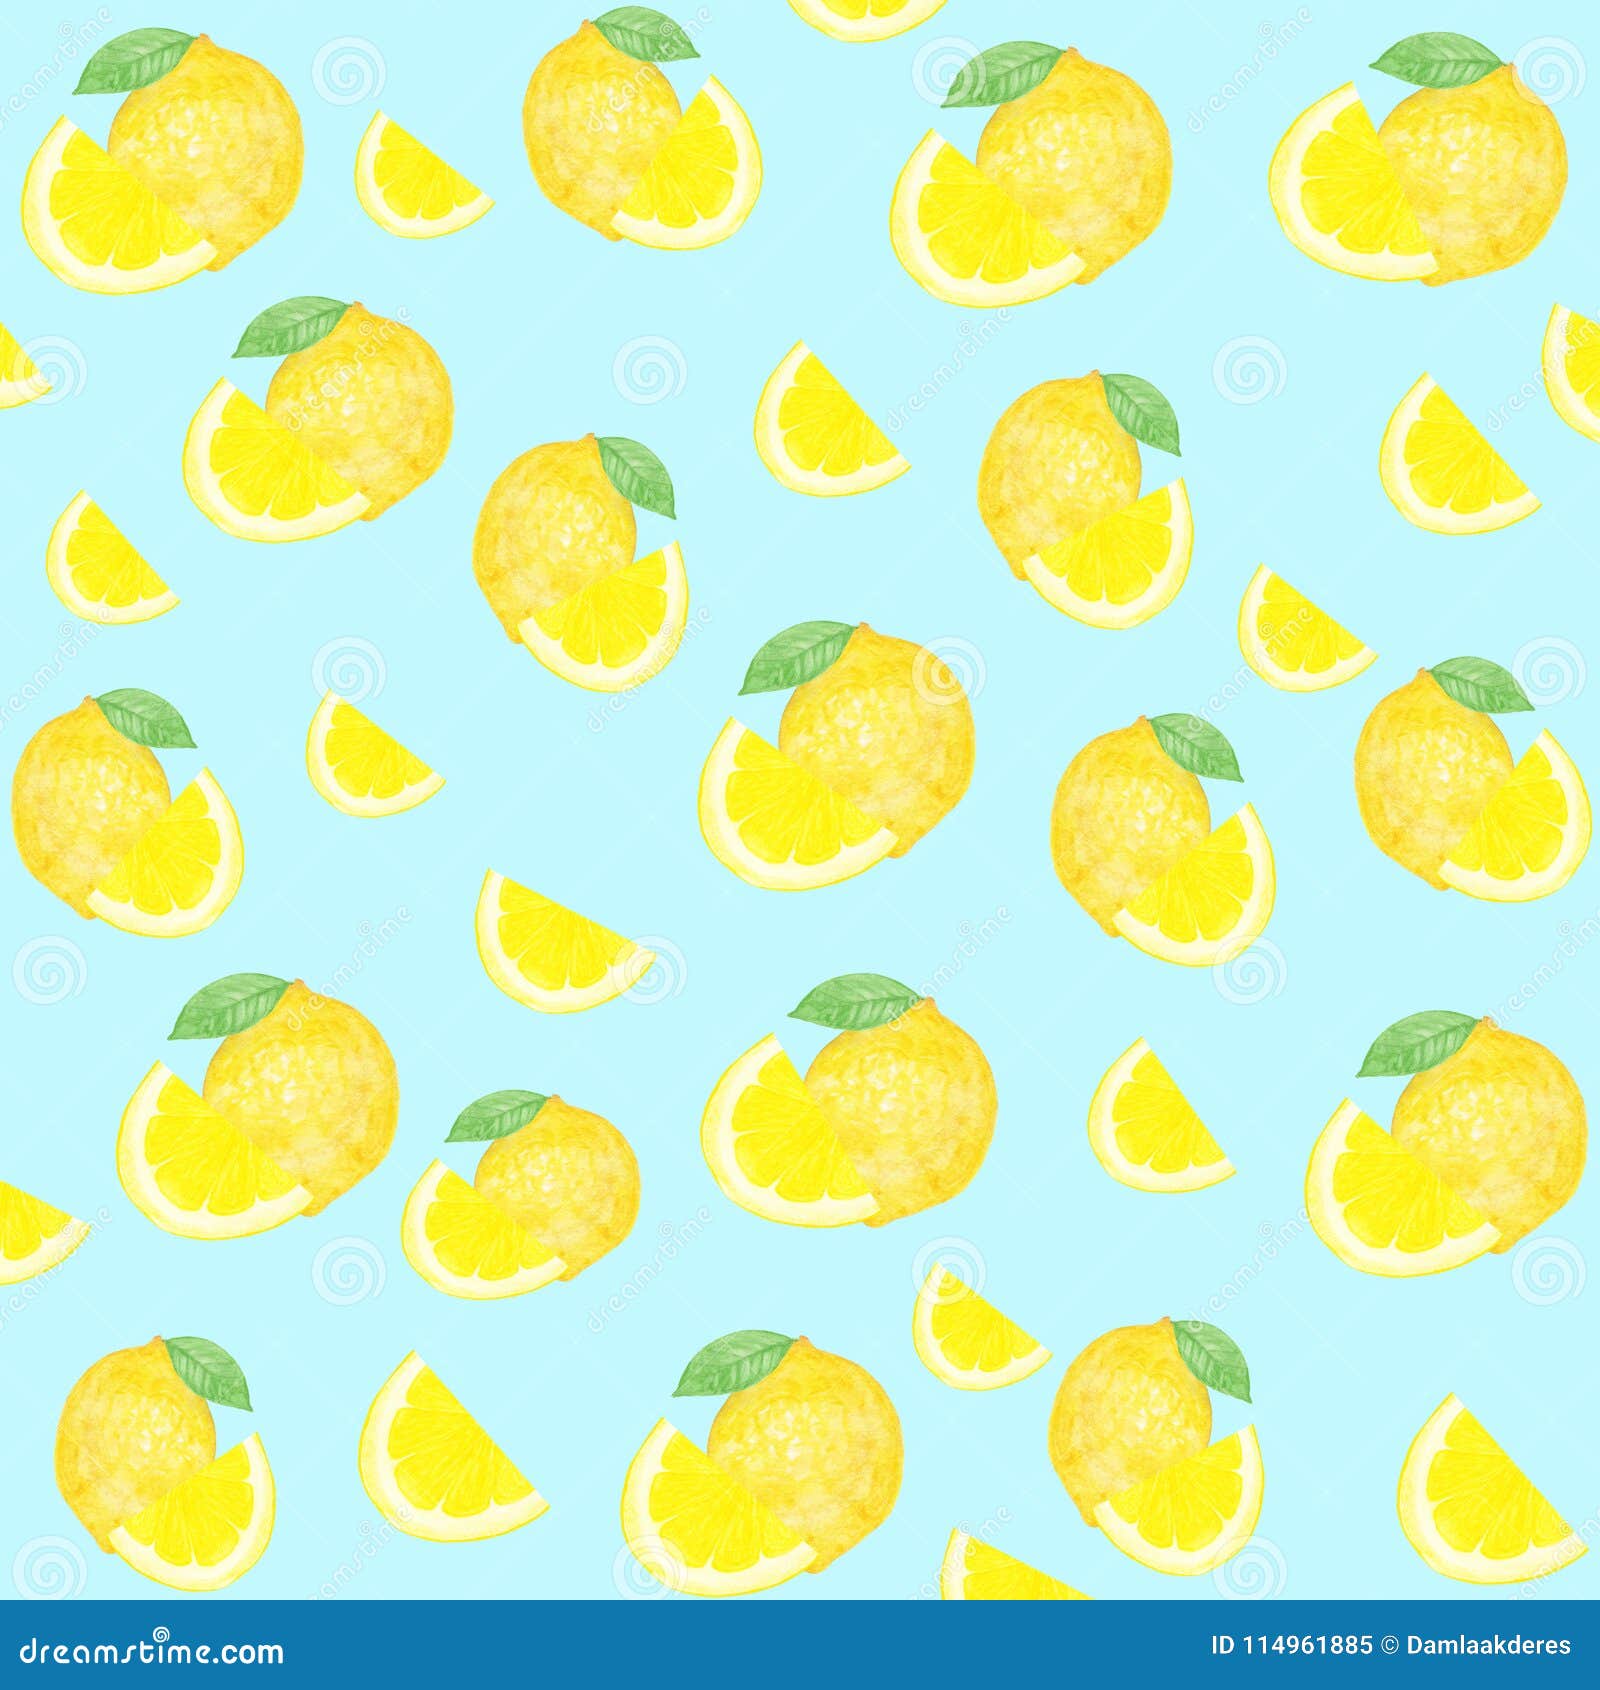 Watercolor Seamless Pattern of Lemon Fruit. Watercolor Lemon Pattern on ...